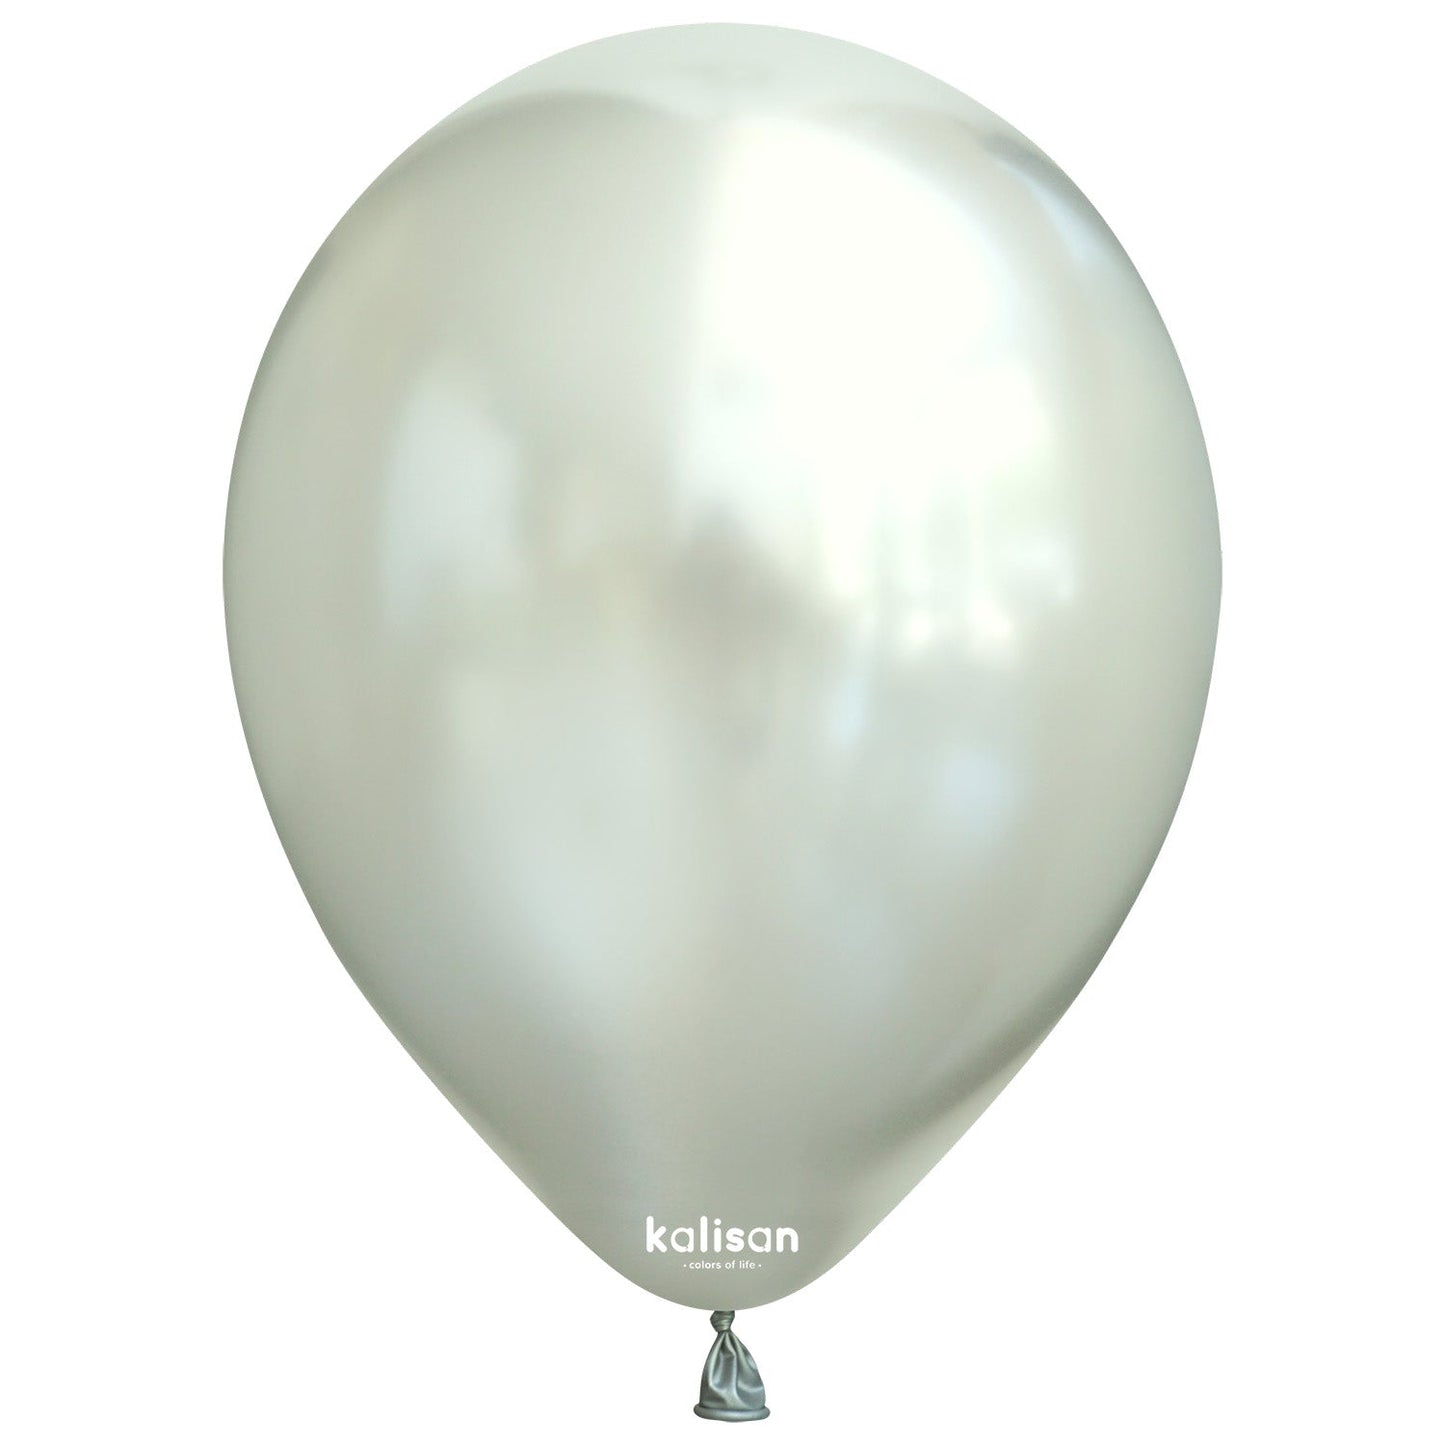 Kalisan Metallic Silver Latex Balloons